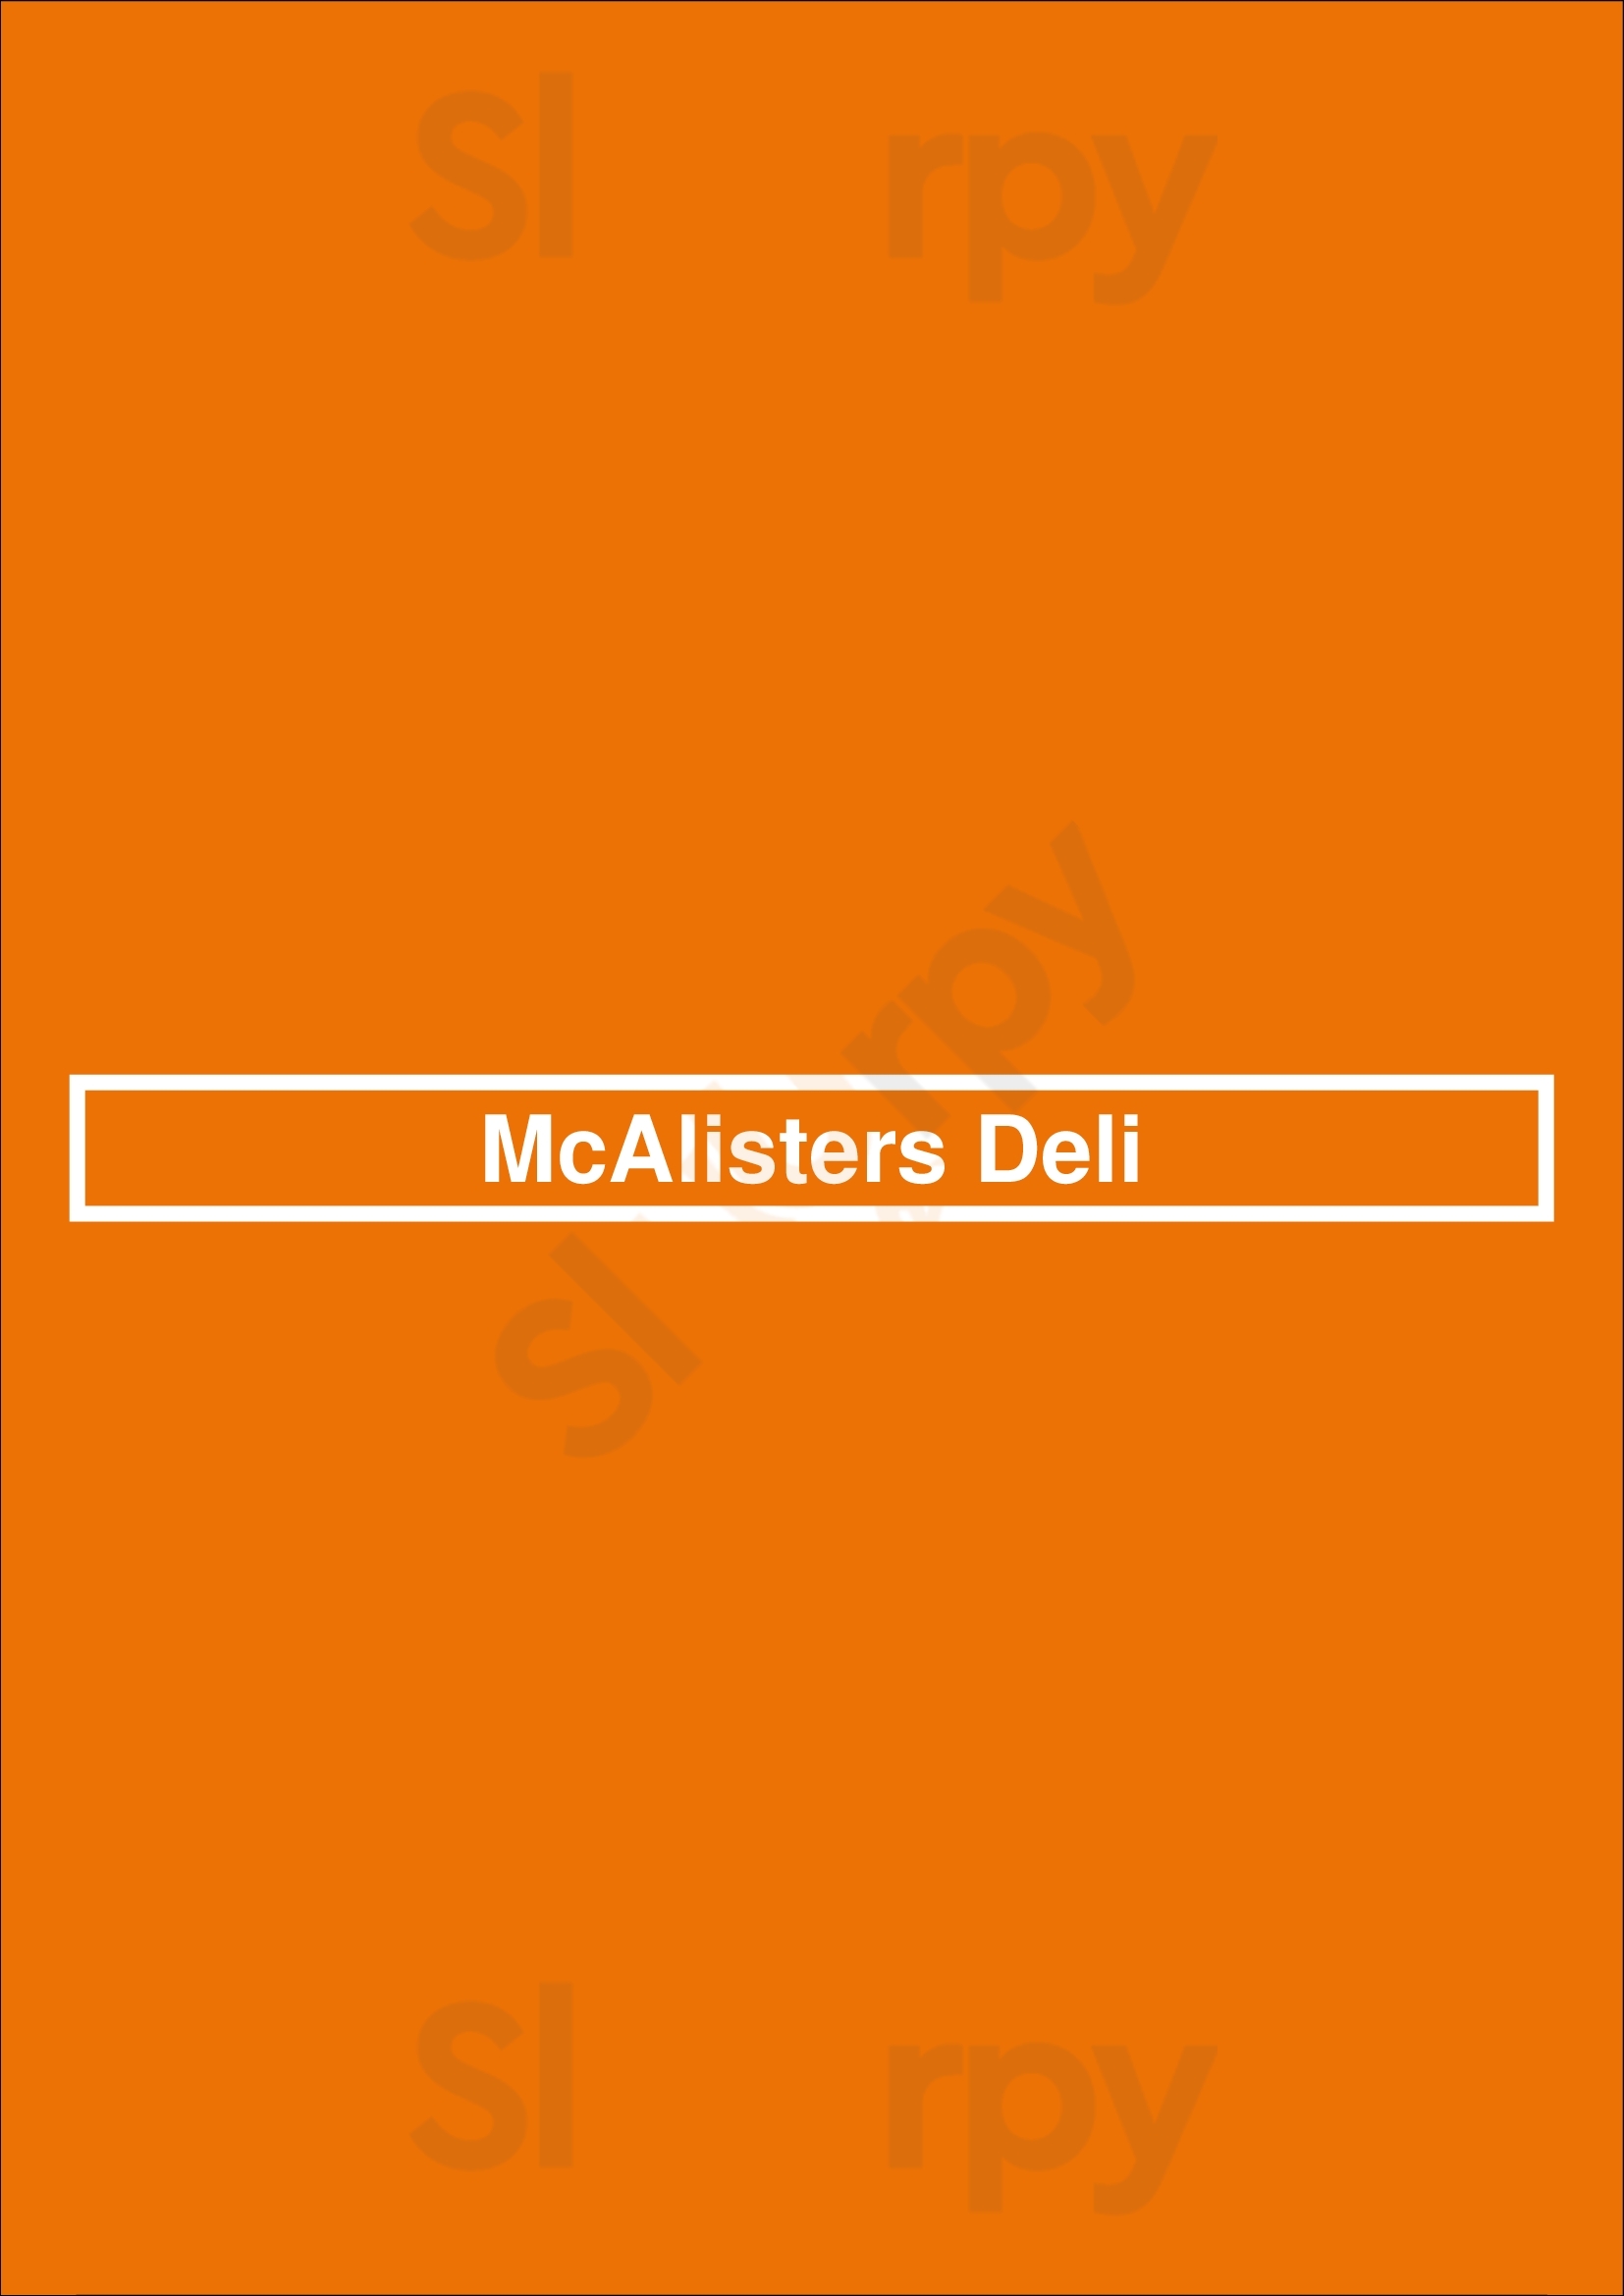 Mcalister's Deli Dallas Menu - 1